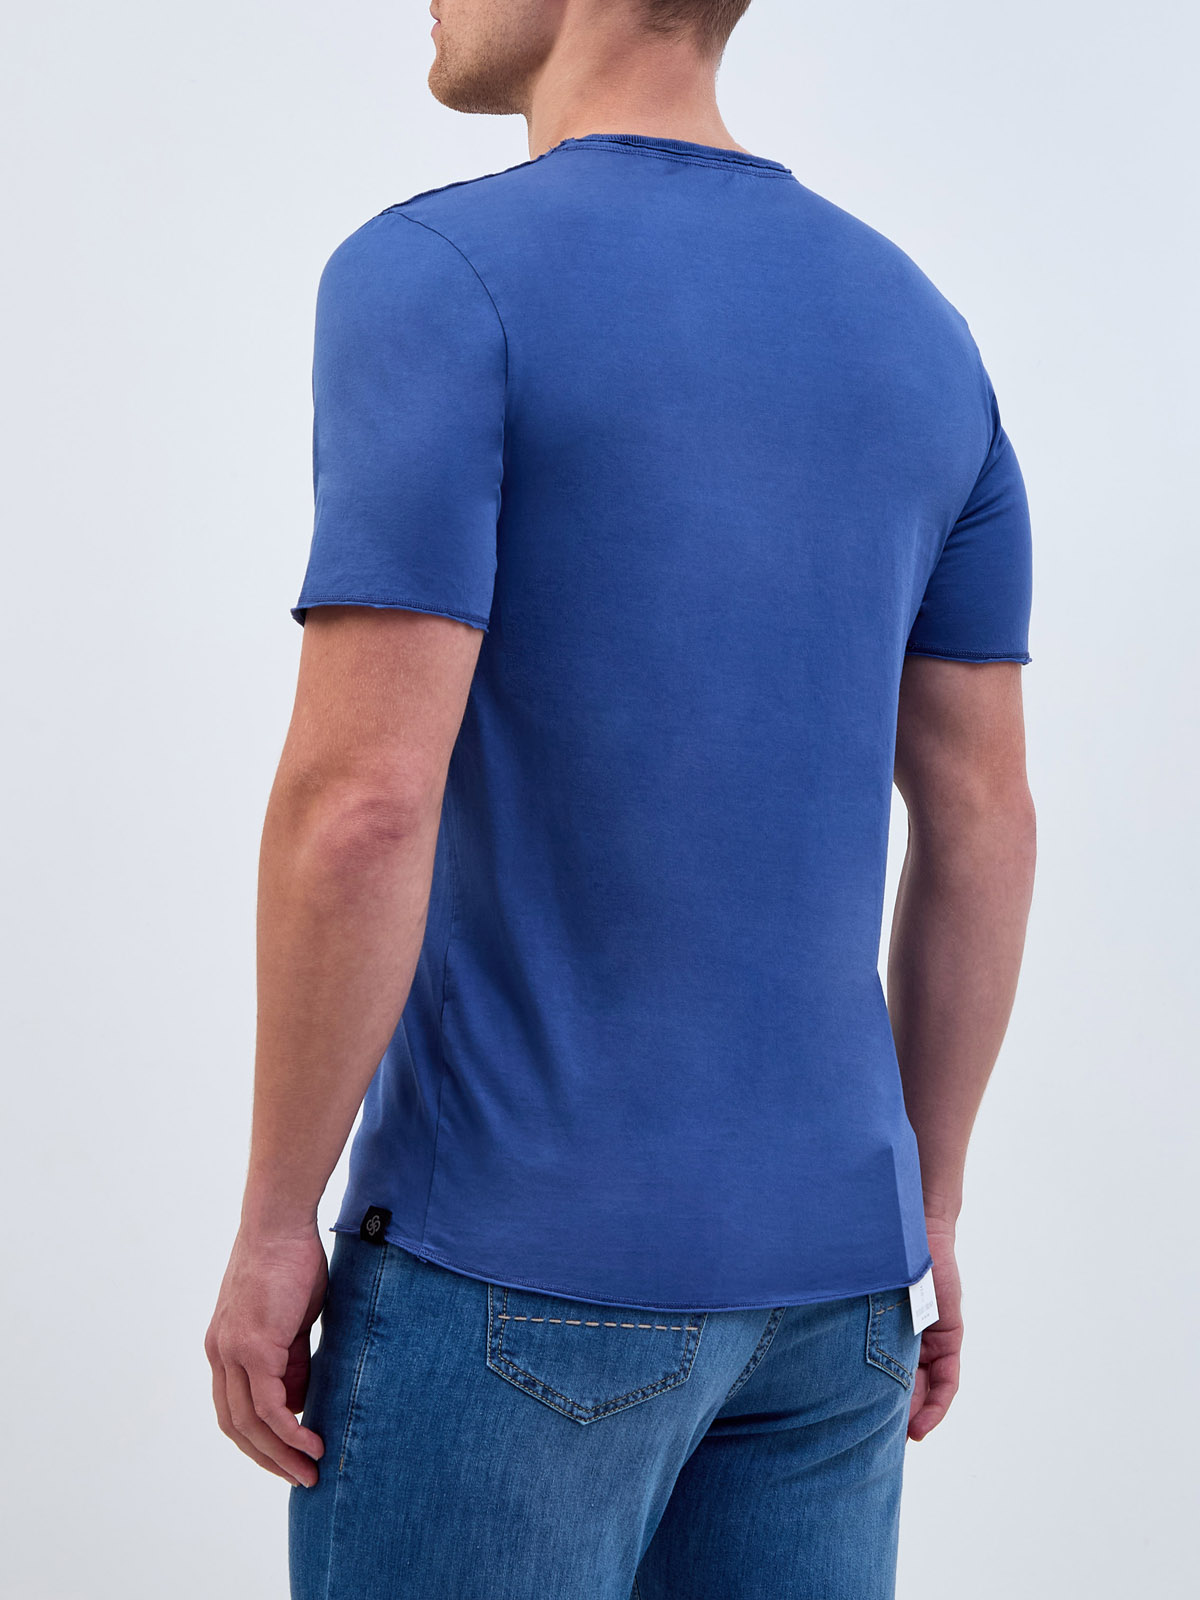 Хлопковая футболка из тонкого джерси с фирменным патчем GRAN SASSO, цвет синий, размер 50;52;54;56;58 - фото 4